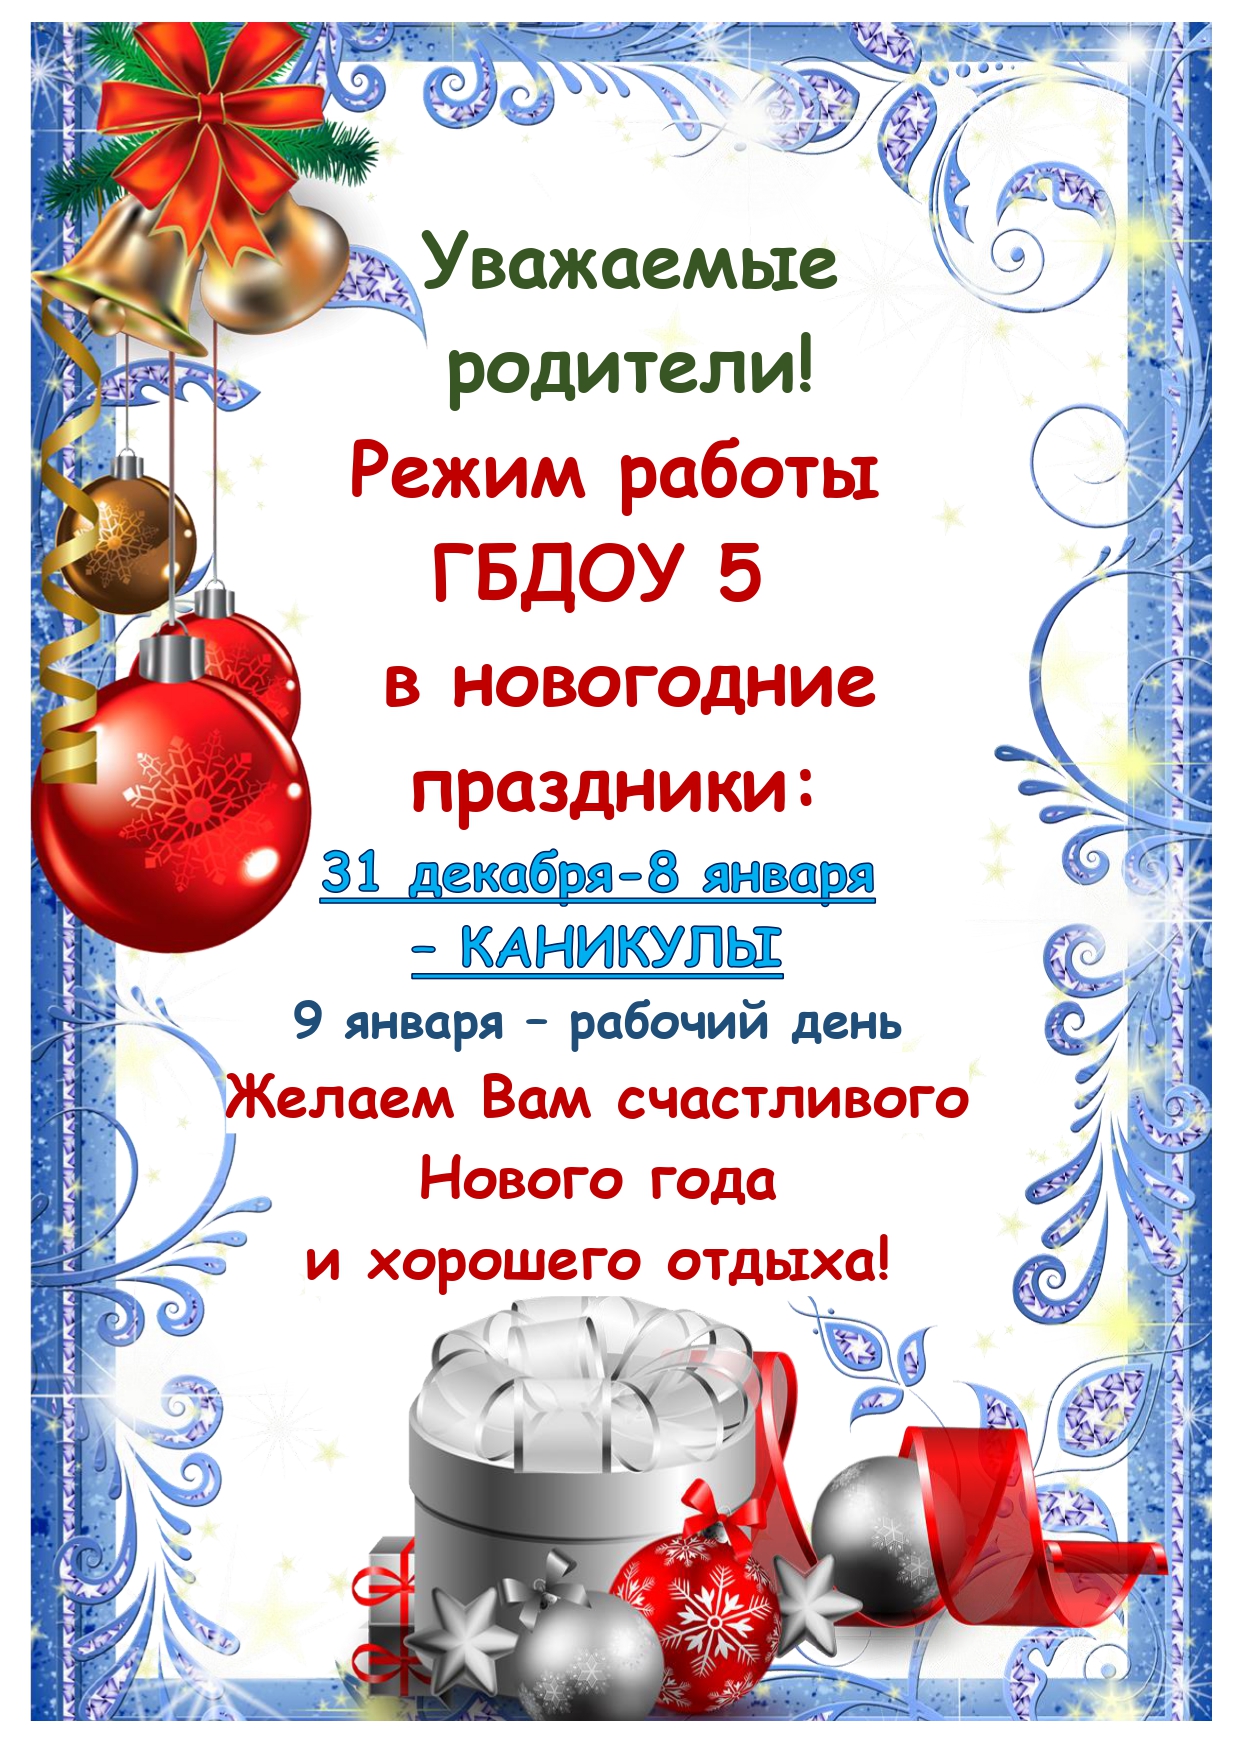 Объявление новогодние каникулы page 0001